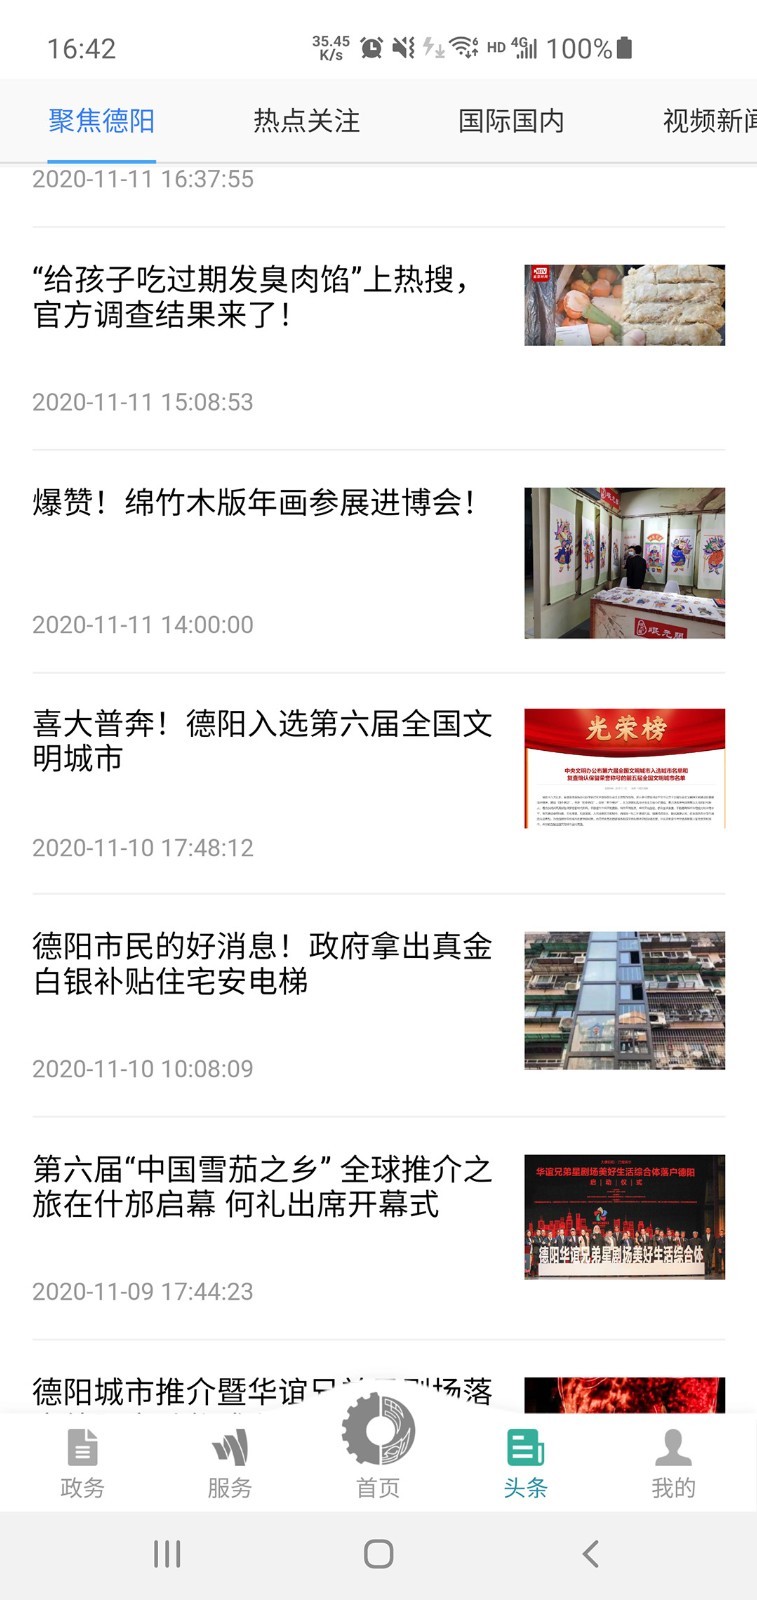 德阳市民通南昌app软件如何开发